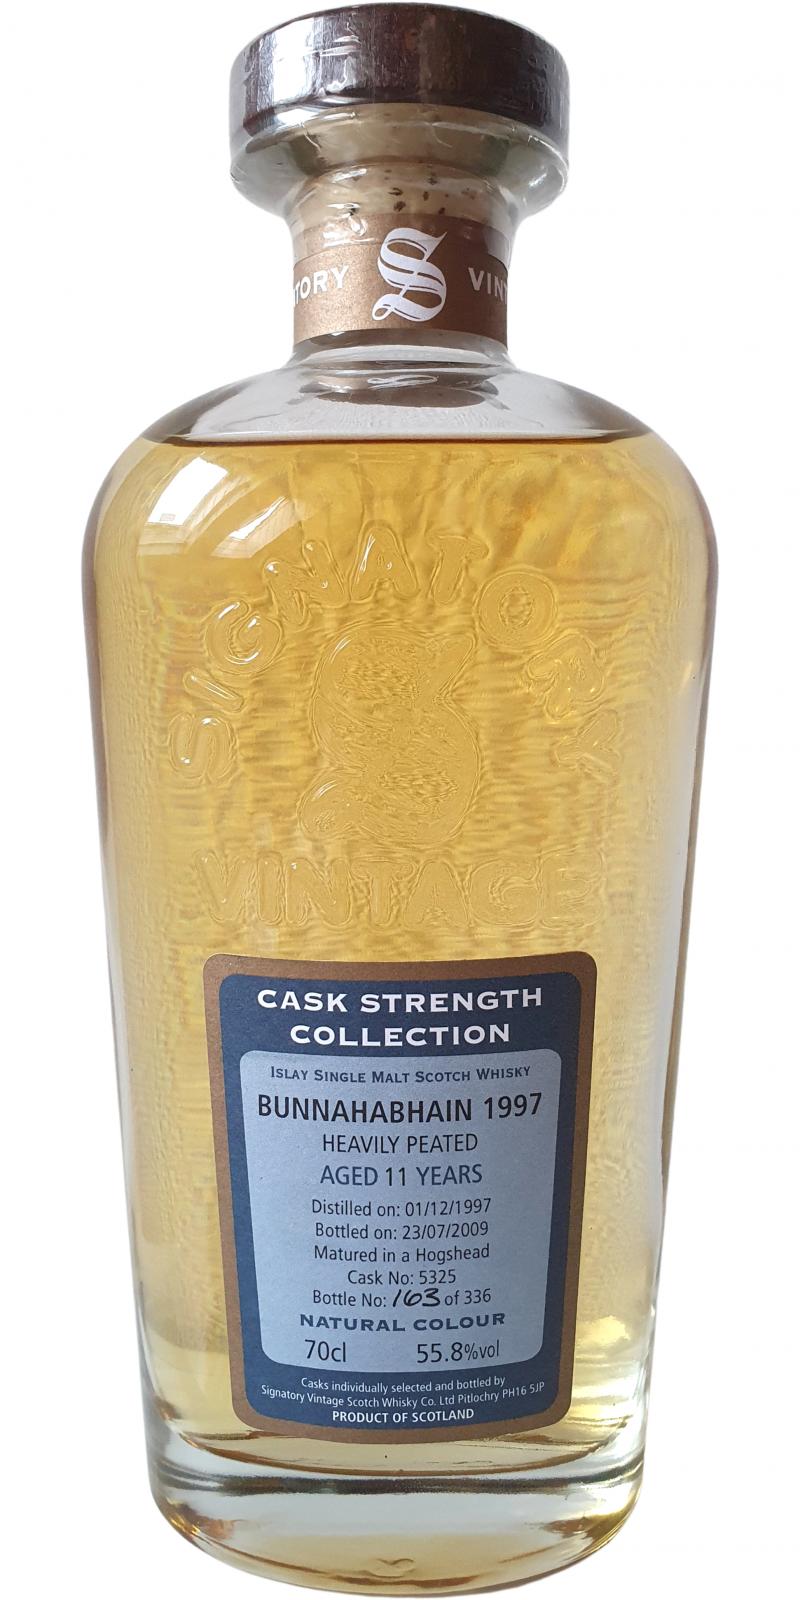 Bunnahabhain 1997 SV Cask Strength Collection Heavily Peated #5325 55.8% 700ml